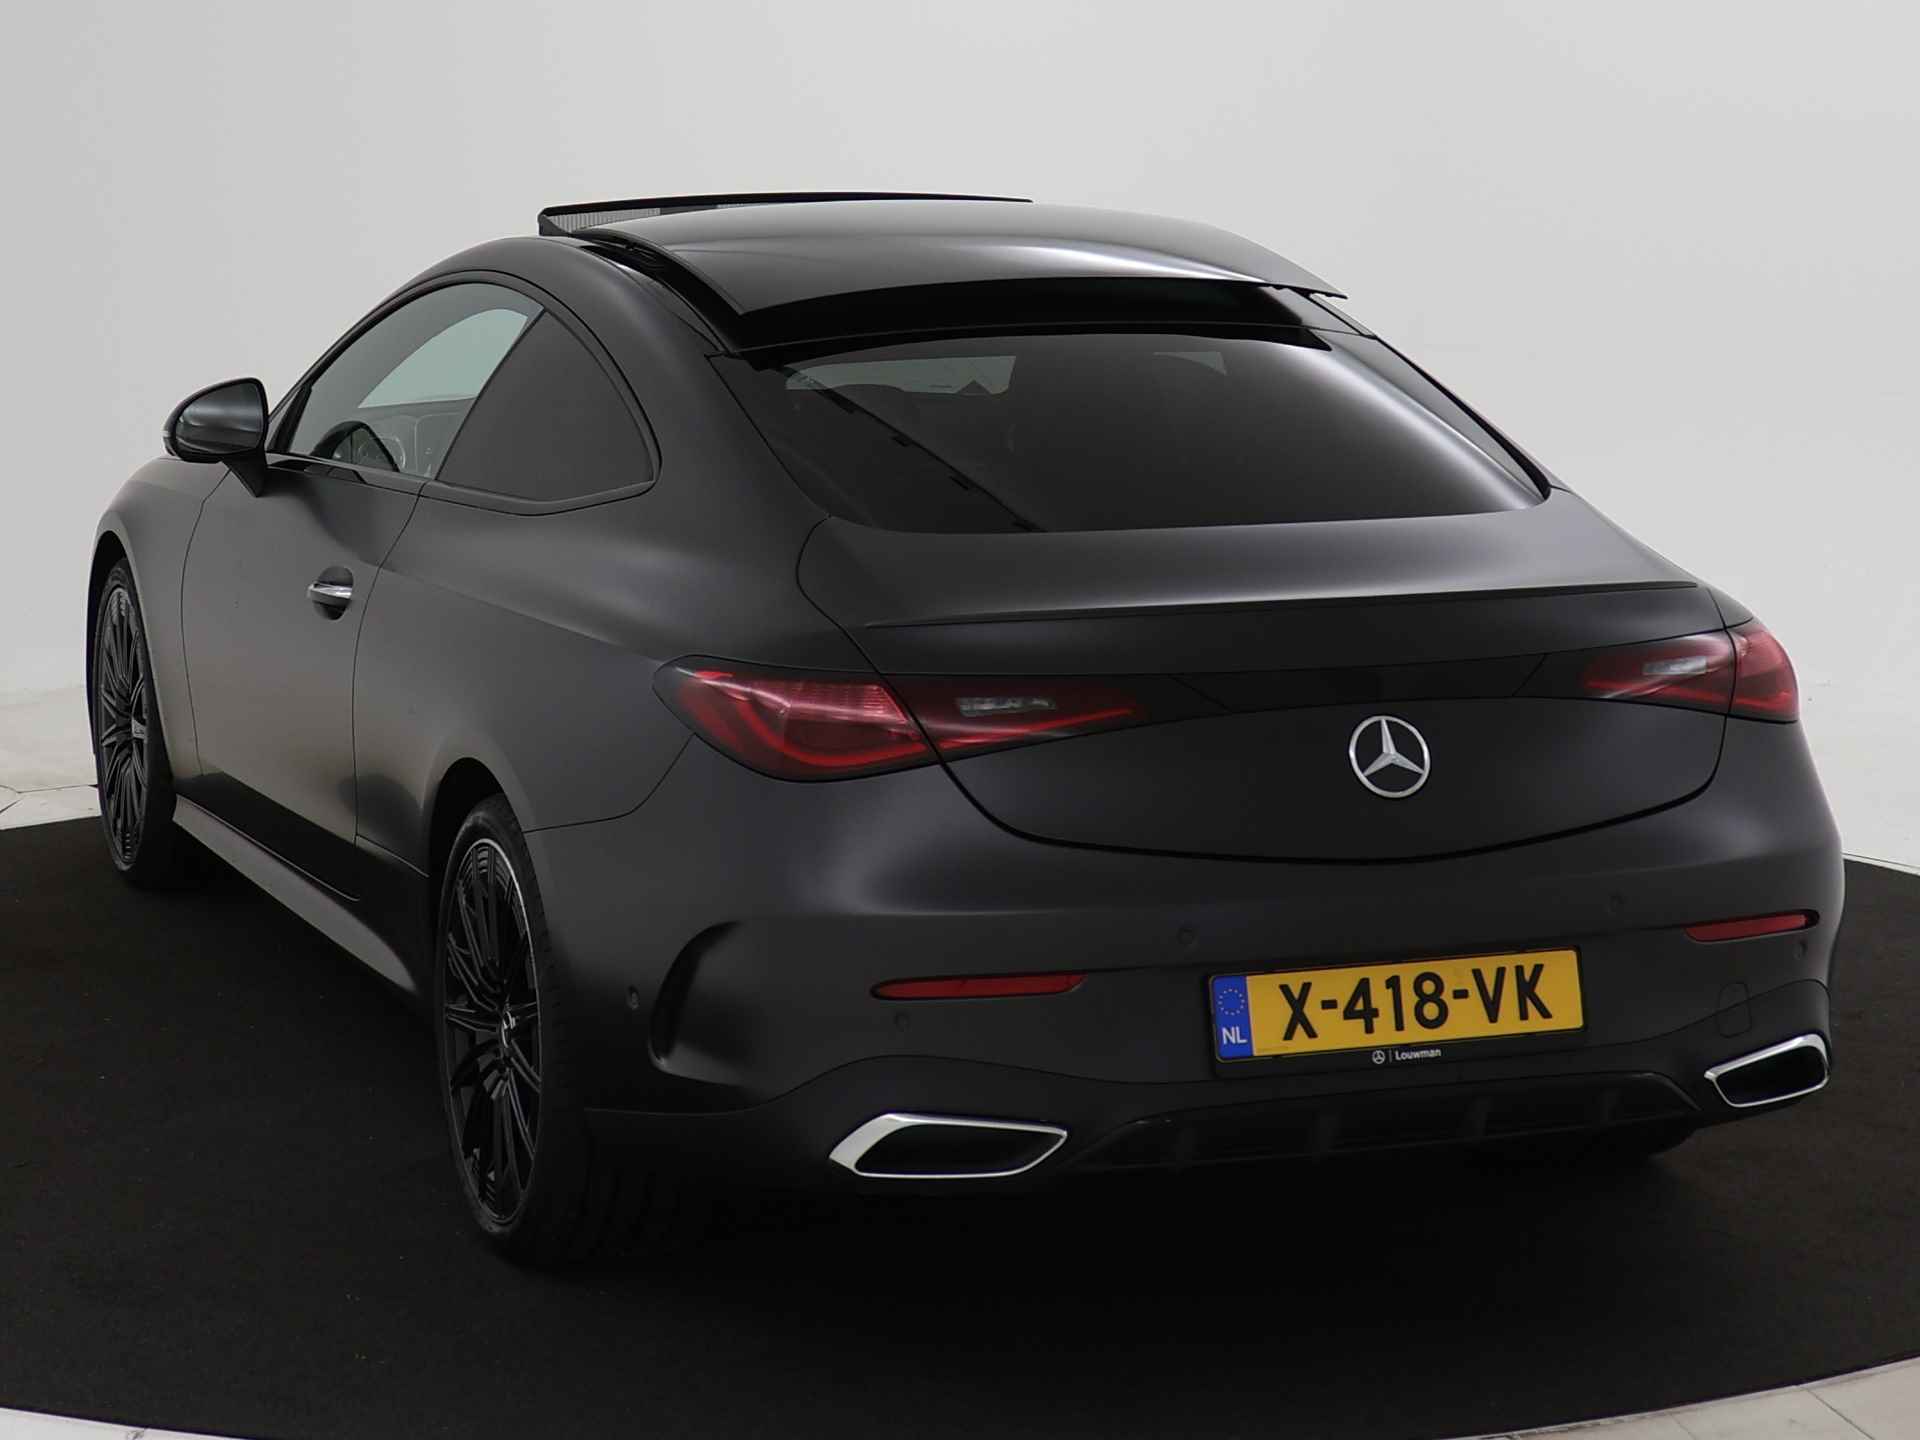 Mercedes-Benz CLE Coupé 300 4MATIC AMG Line | Grafiet grijs magno | 360° camera | Rijassistentiepakket plus |  Head-up display | Inclusief 24 maanden Mercedes-Benz Certified garantie voor Europa. - 18/45